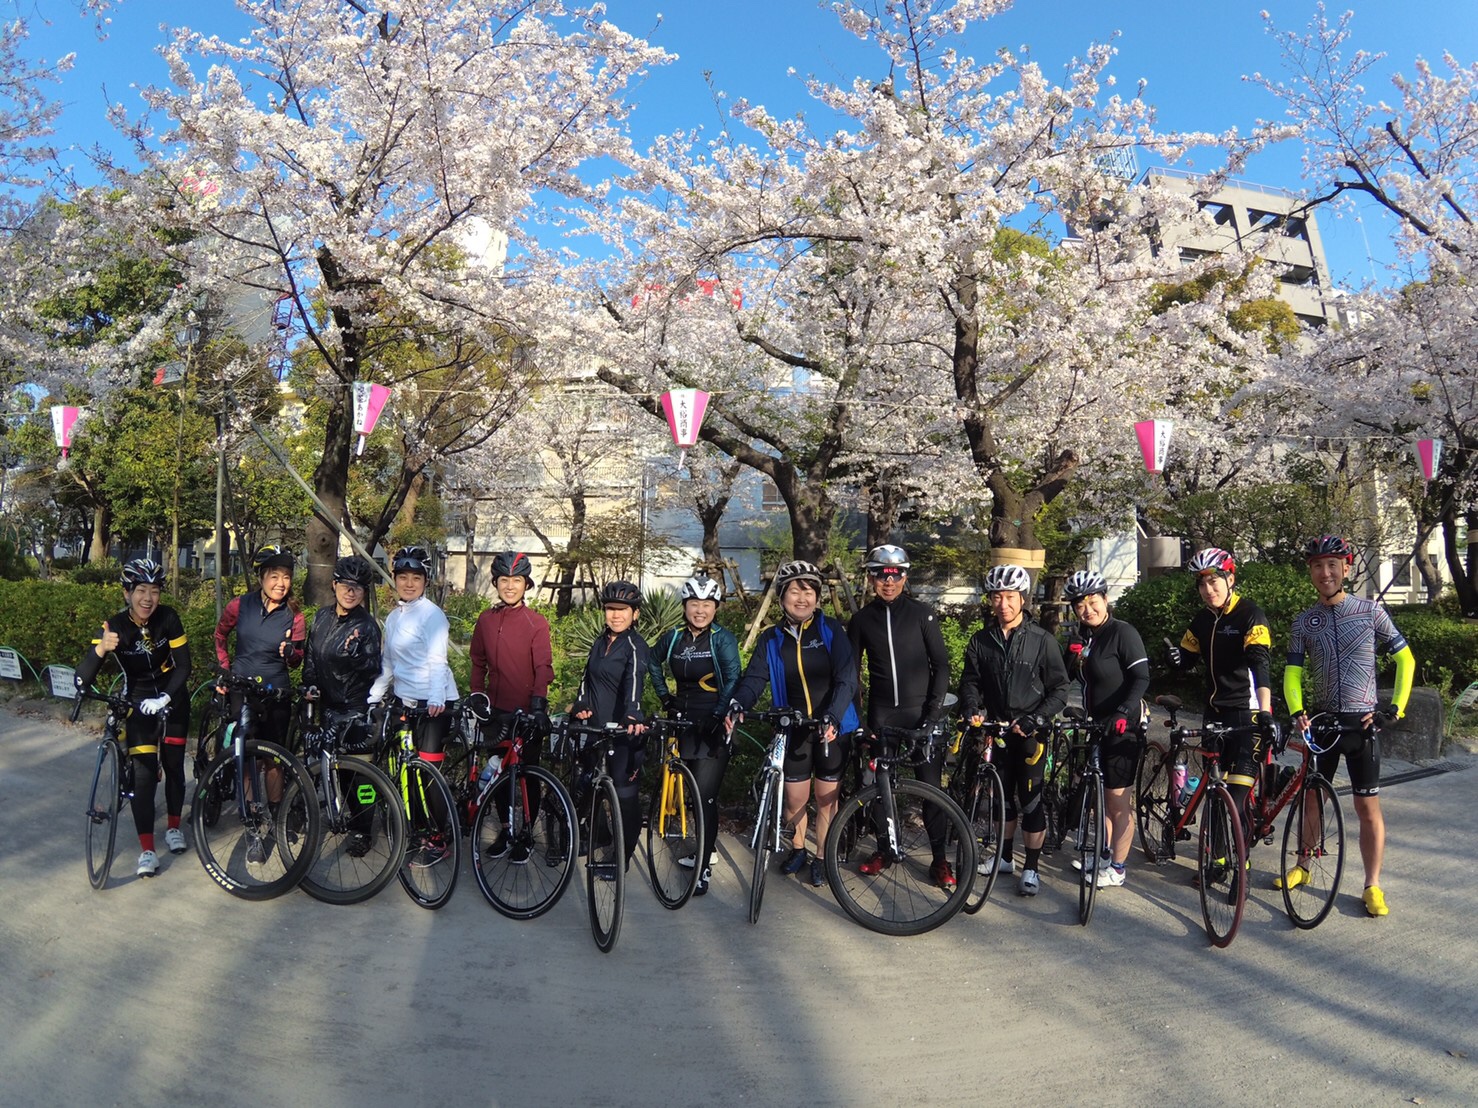 <p>日本にはステキな「四季」があります。</p>
<p>歩いているからこそ気付く「春」</p>
<p>自転車に乗っているから気付く「春」</p>
<p>走っているからこそ気付く「春」</p>
<p> </p>
<p>・・・これからもトキノサイクリングは様々なイベントを企画してまいります。</p>
<p>ぜひ、ご参加ください。</p>